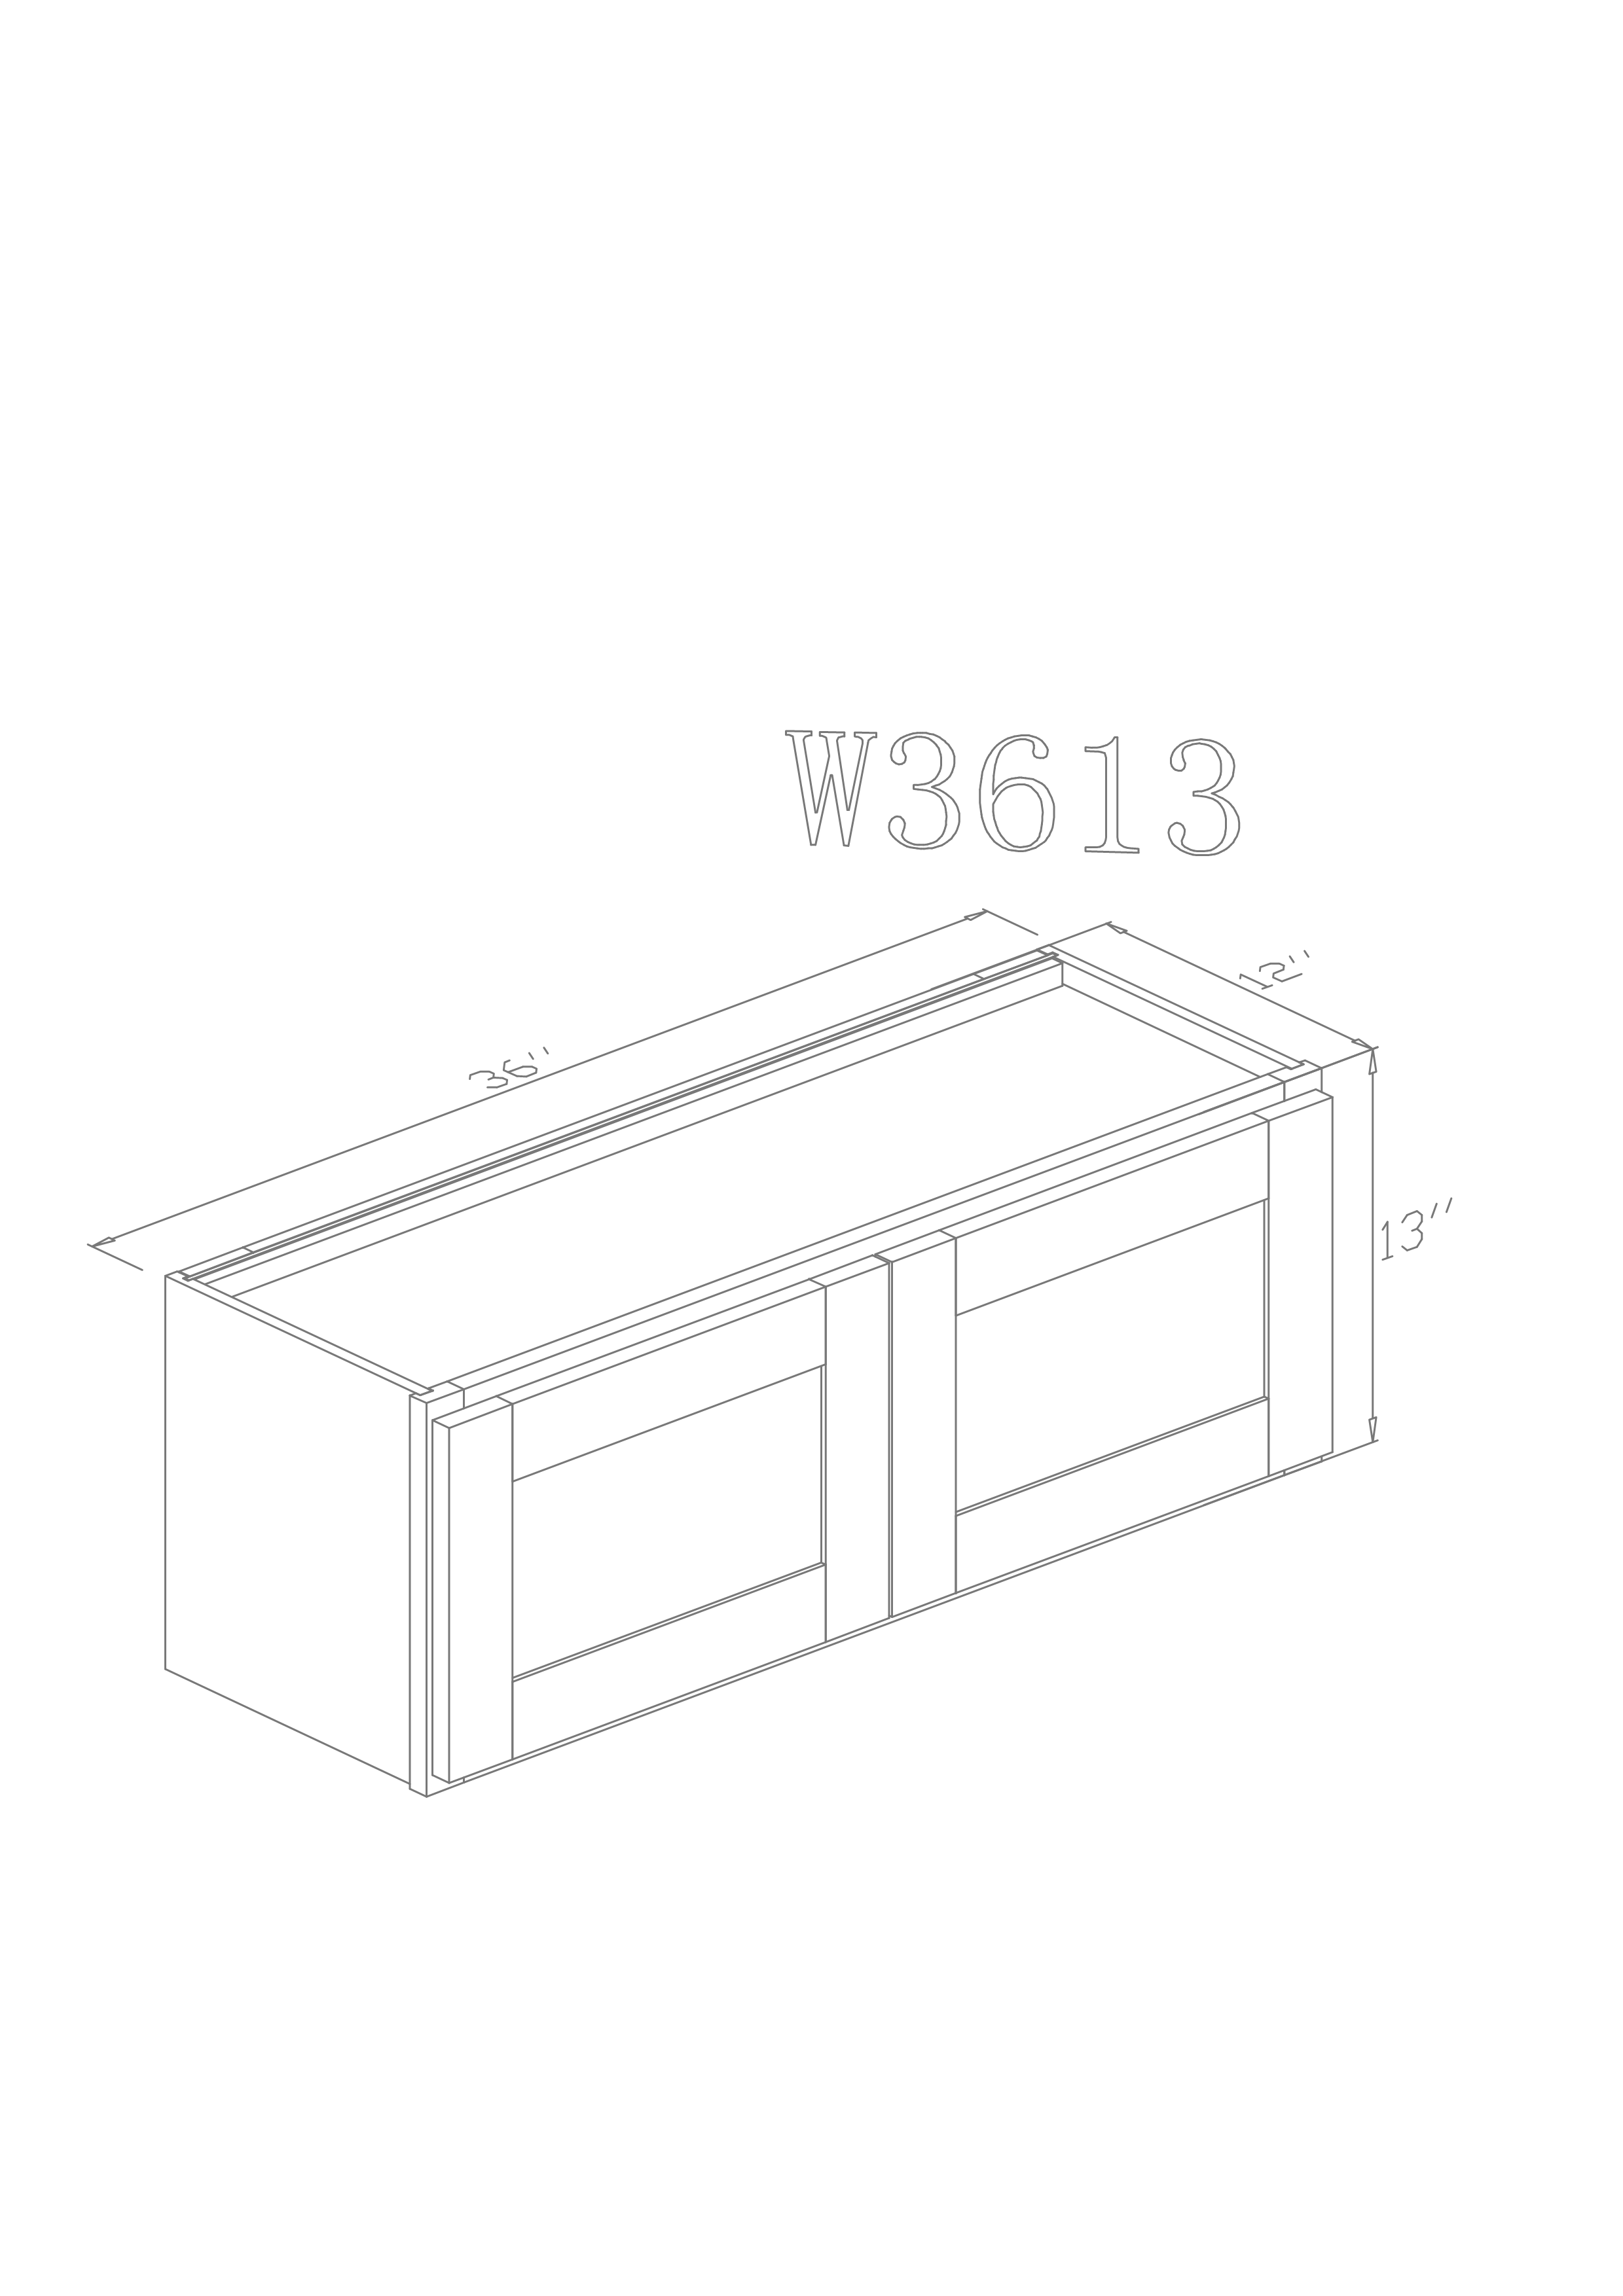 Wall 36" - Cognac 36 Inch Wall Refrigerator Cabinet(12") - ZCBuildingSupply